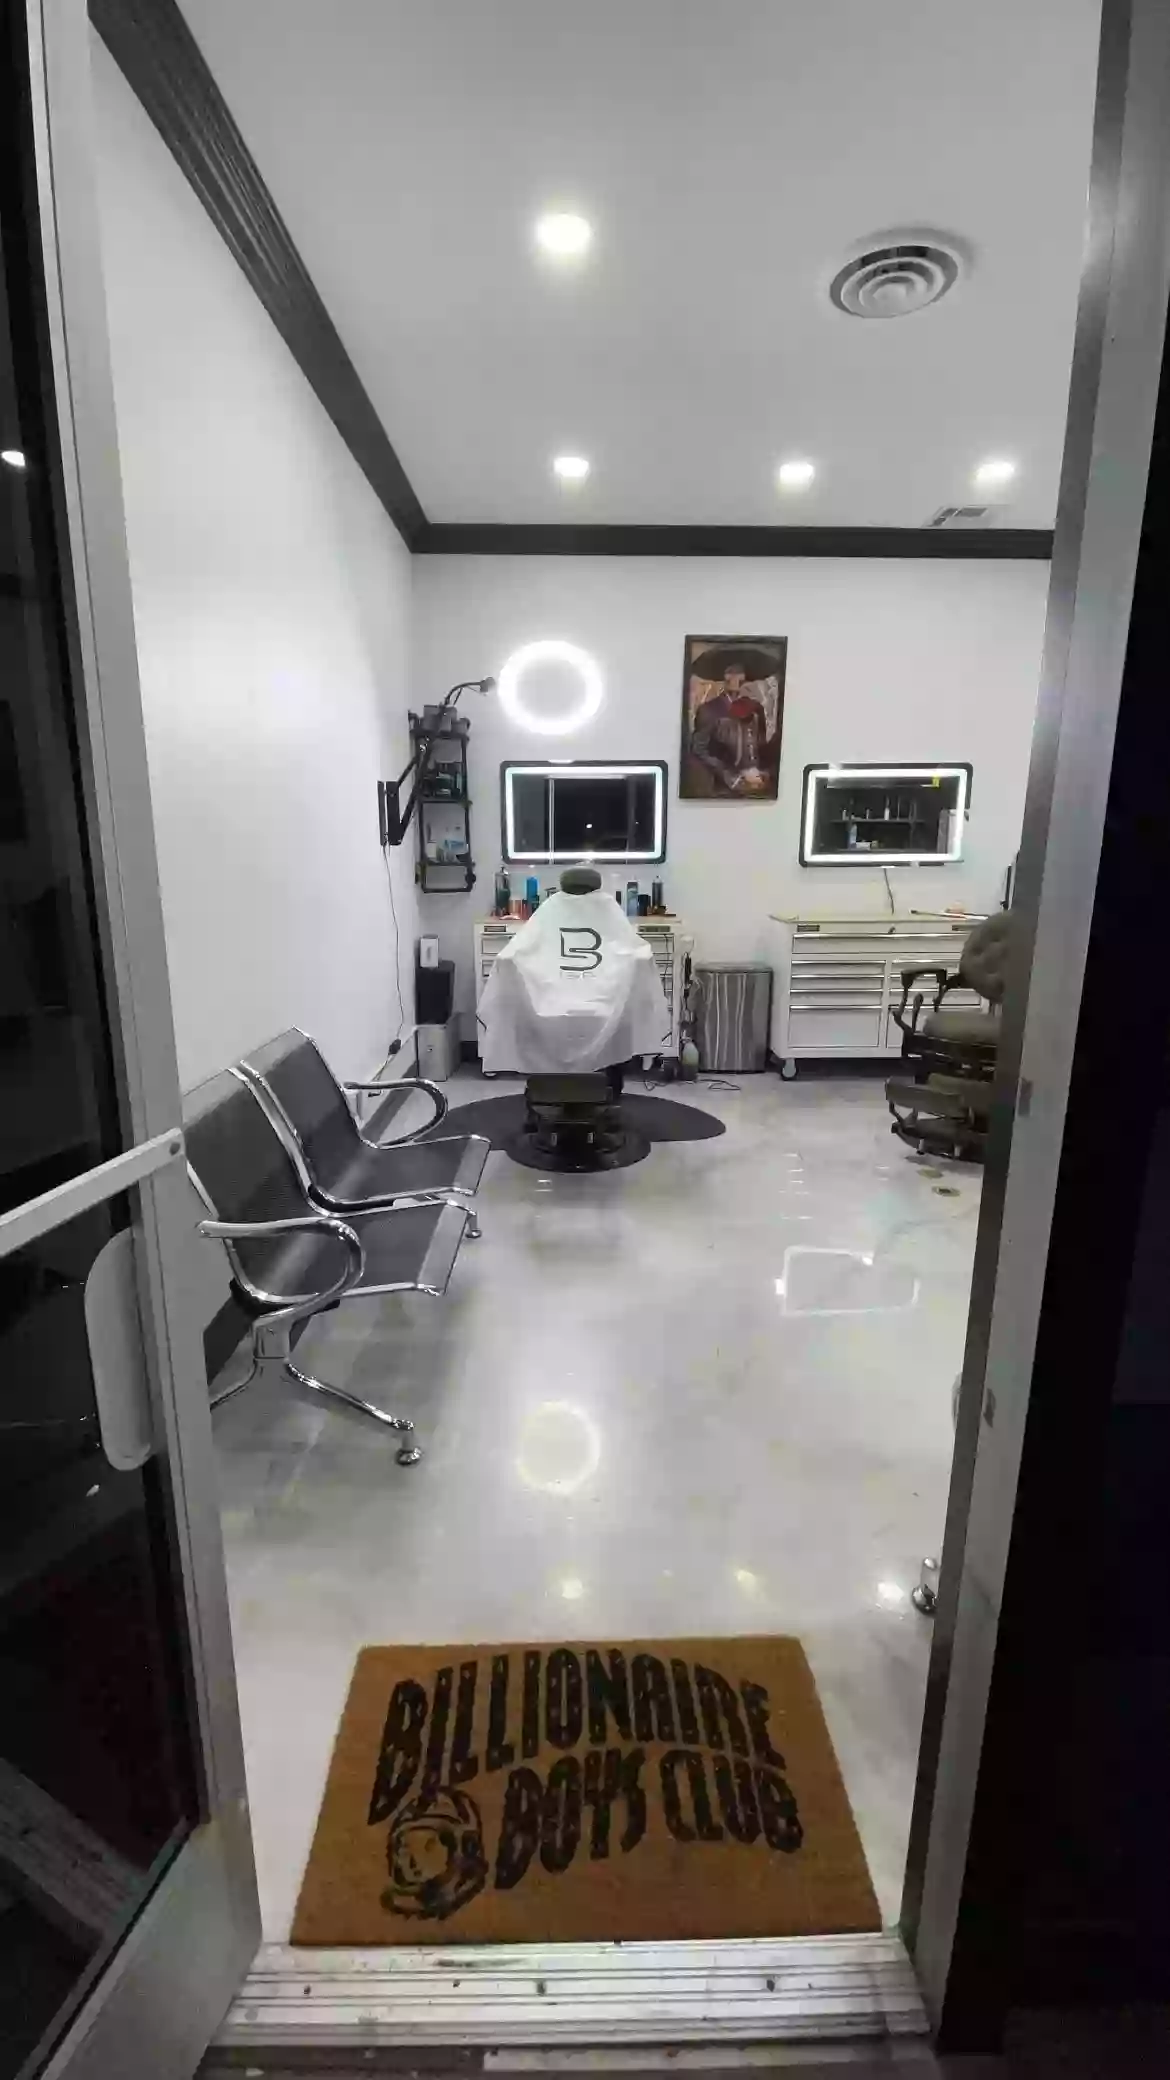 Elite Barber Parlor